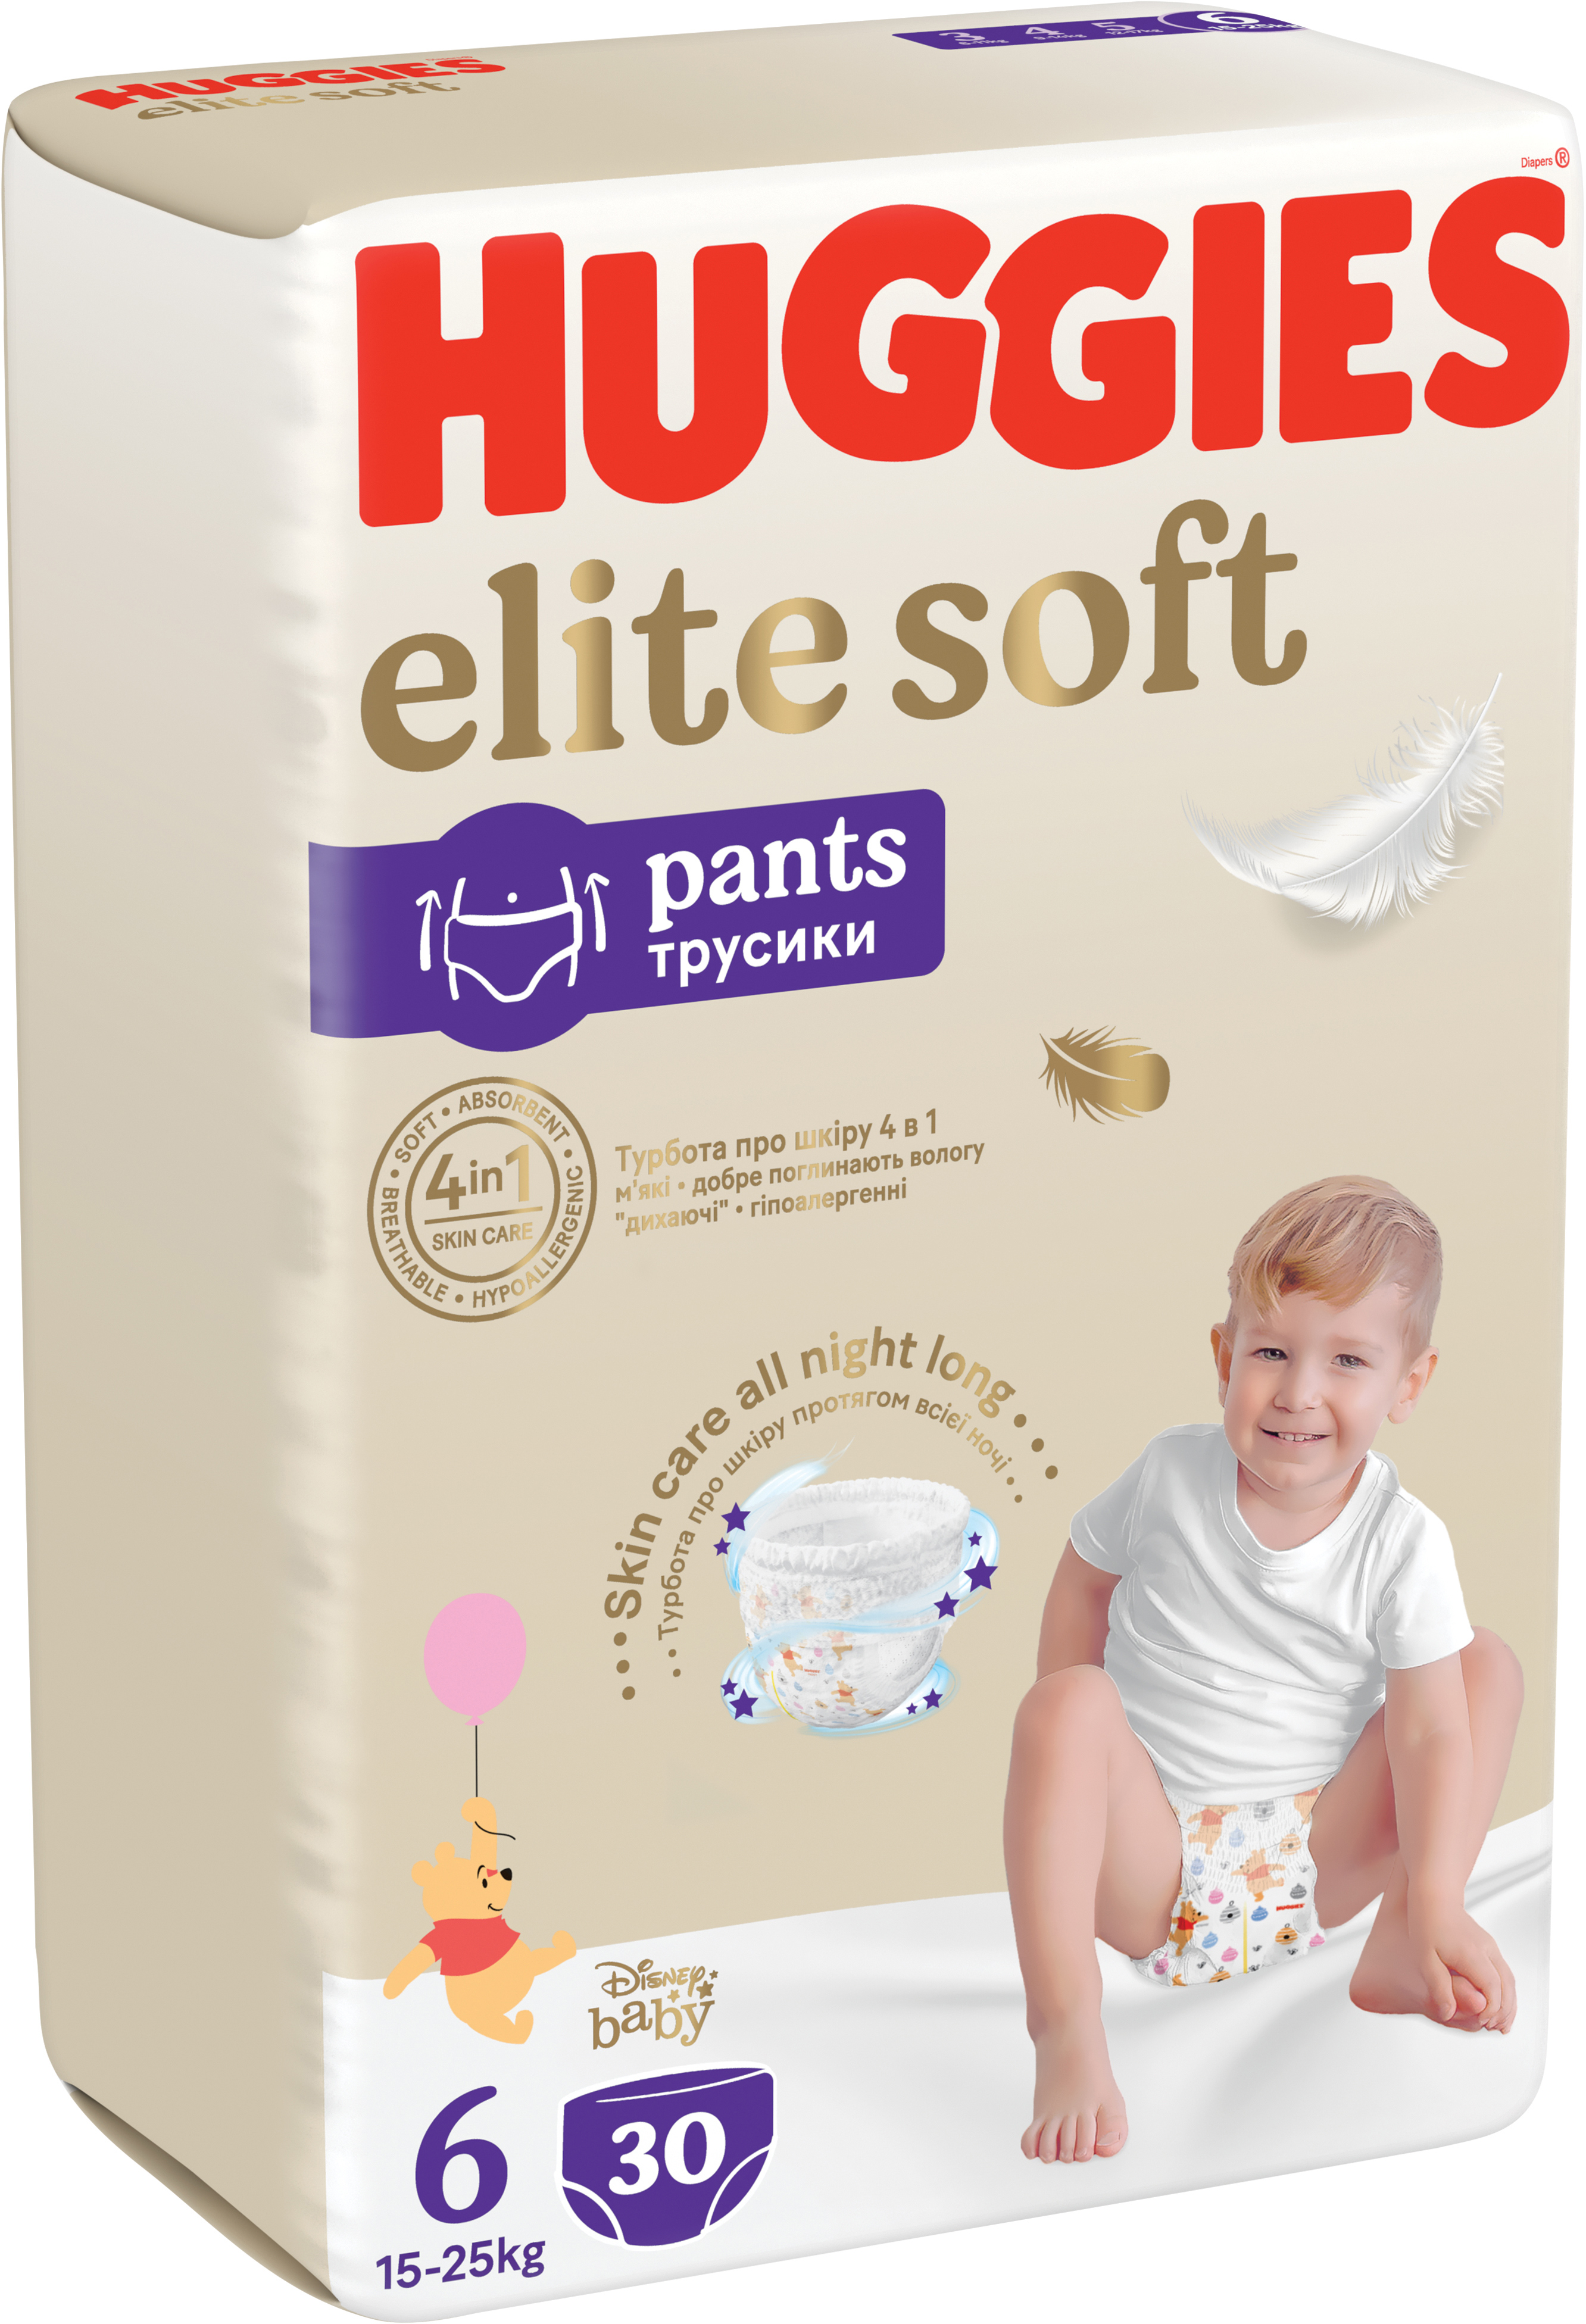 подгузники-трусики huggies elite soft 6